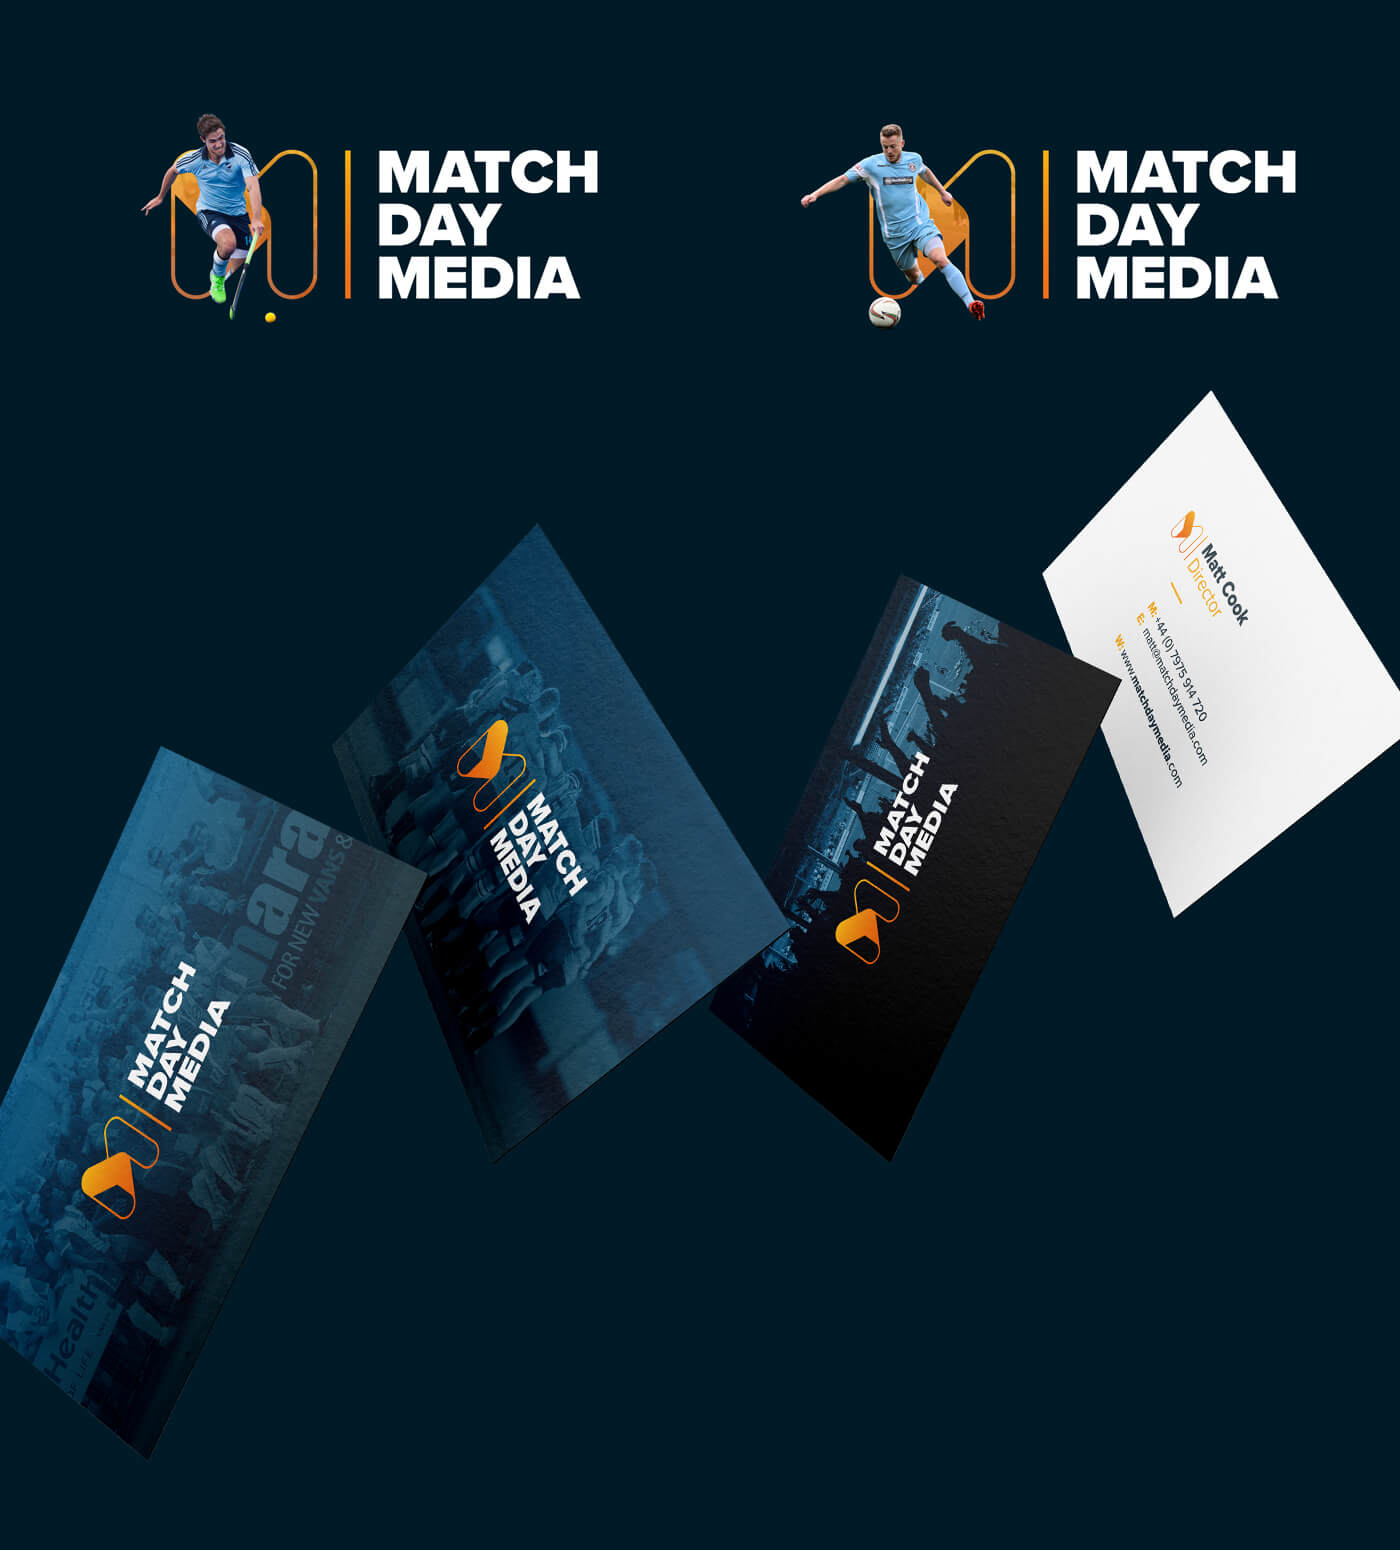 Rapid Fire Match Day Media Branding Business Crads